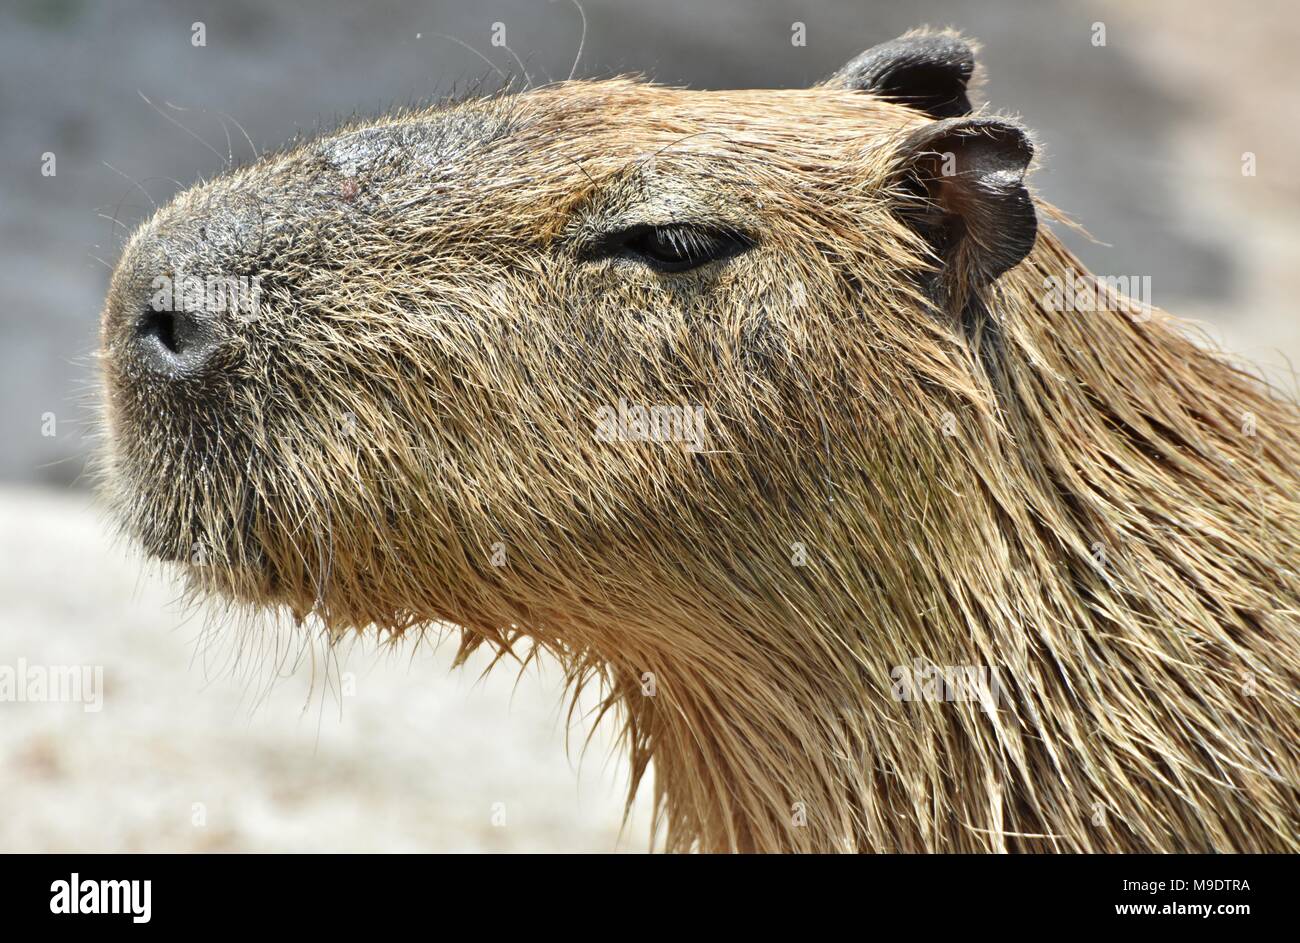 Le Capybara (Hydrochoerus hydrochaeris), originaire d'Amérique du Sud est le plus grand rongeur du monde Banque D'Images